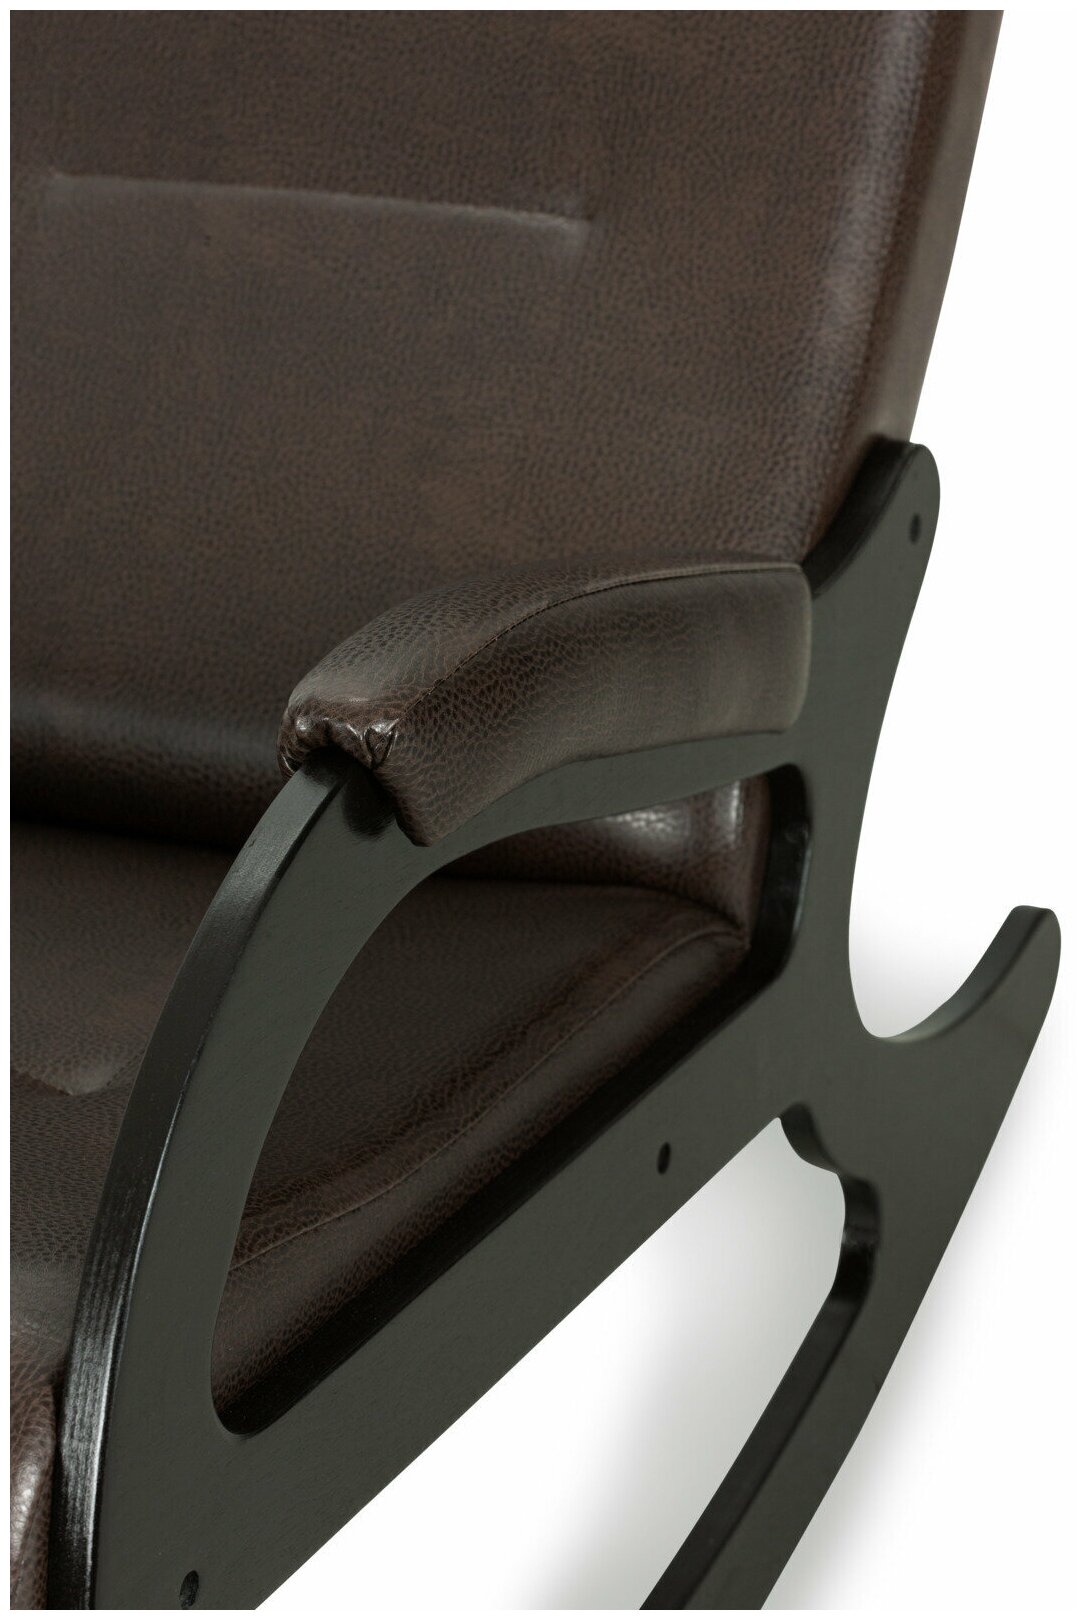 Кресло-качалка для дома Лидер ткань экокожа цвет темно-кориневый (07)